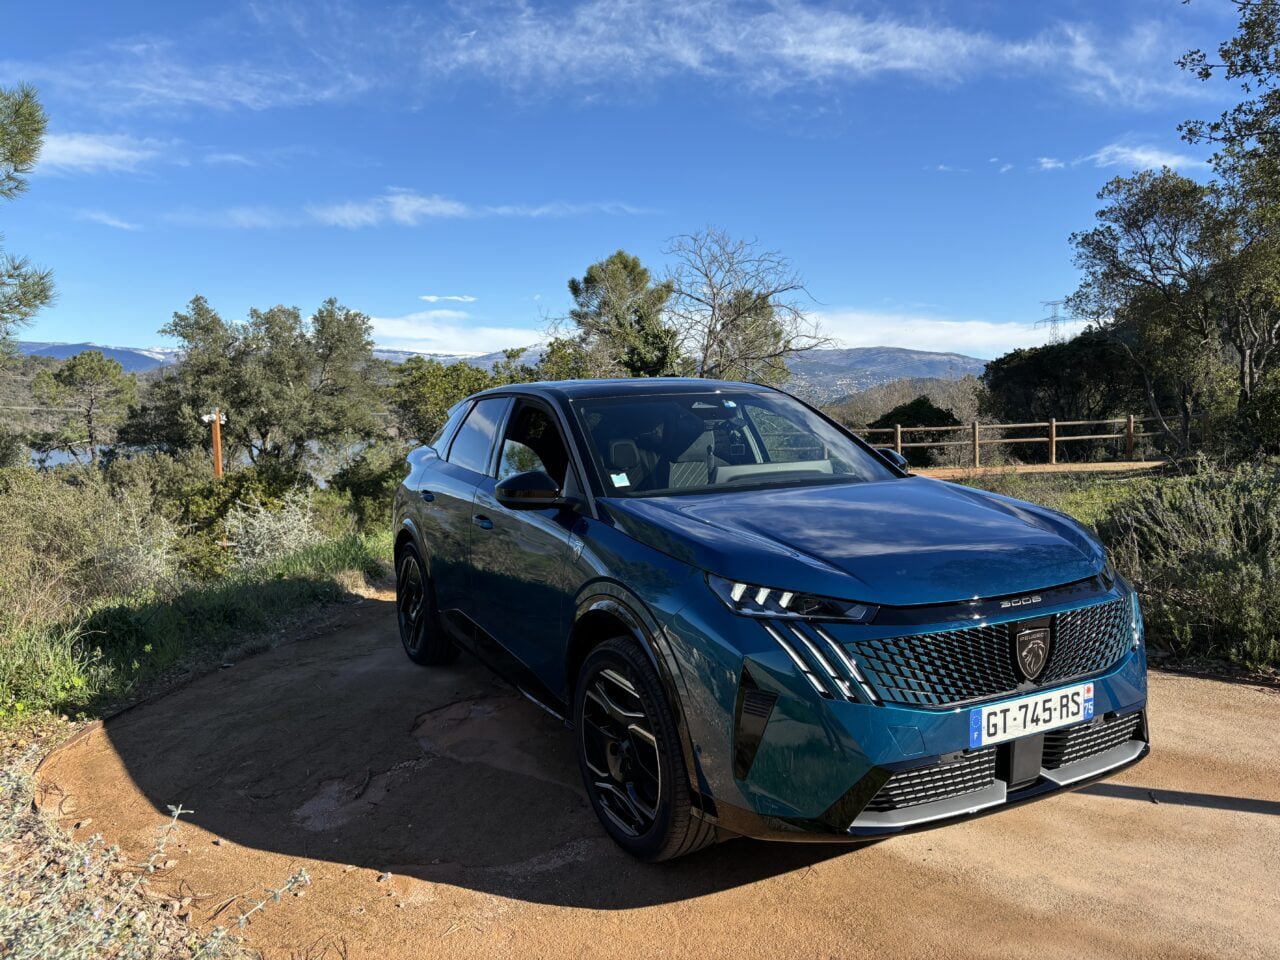 Niebieski samochód marki Peugeot zaparkowany na żwirowej drodze z widokiem na górzysty krajobraz i drzewa w słoneczny dzień.